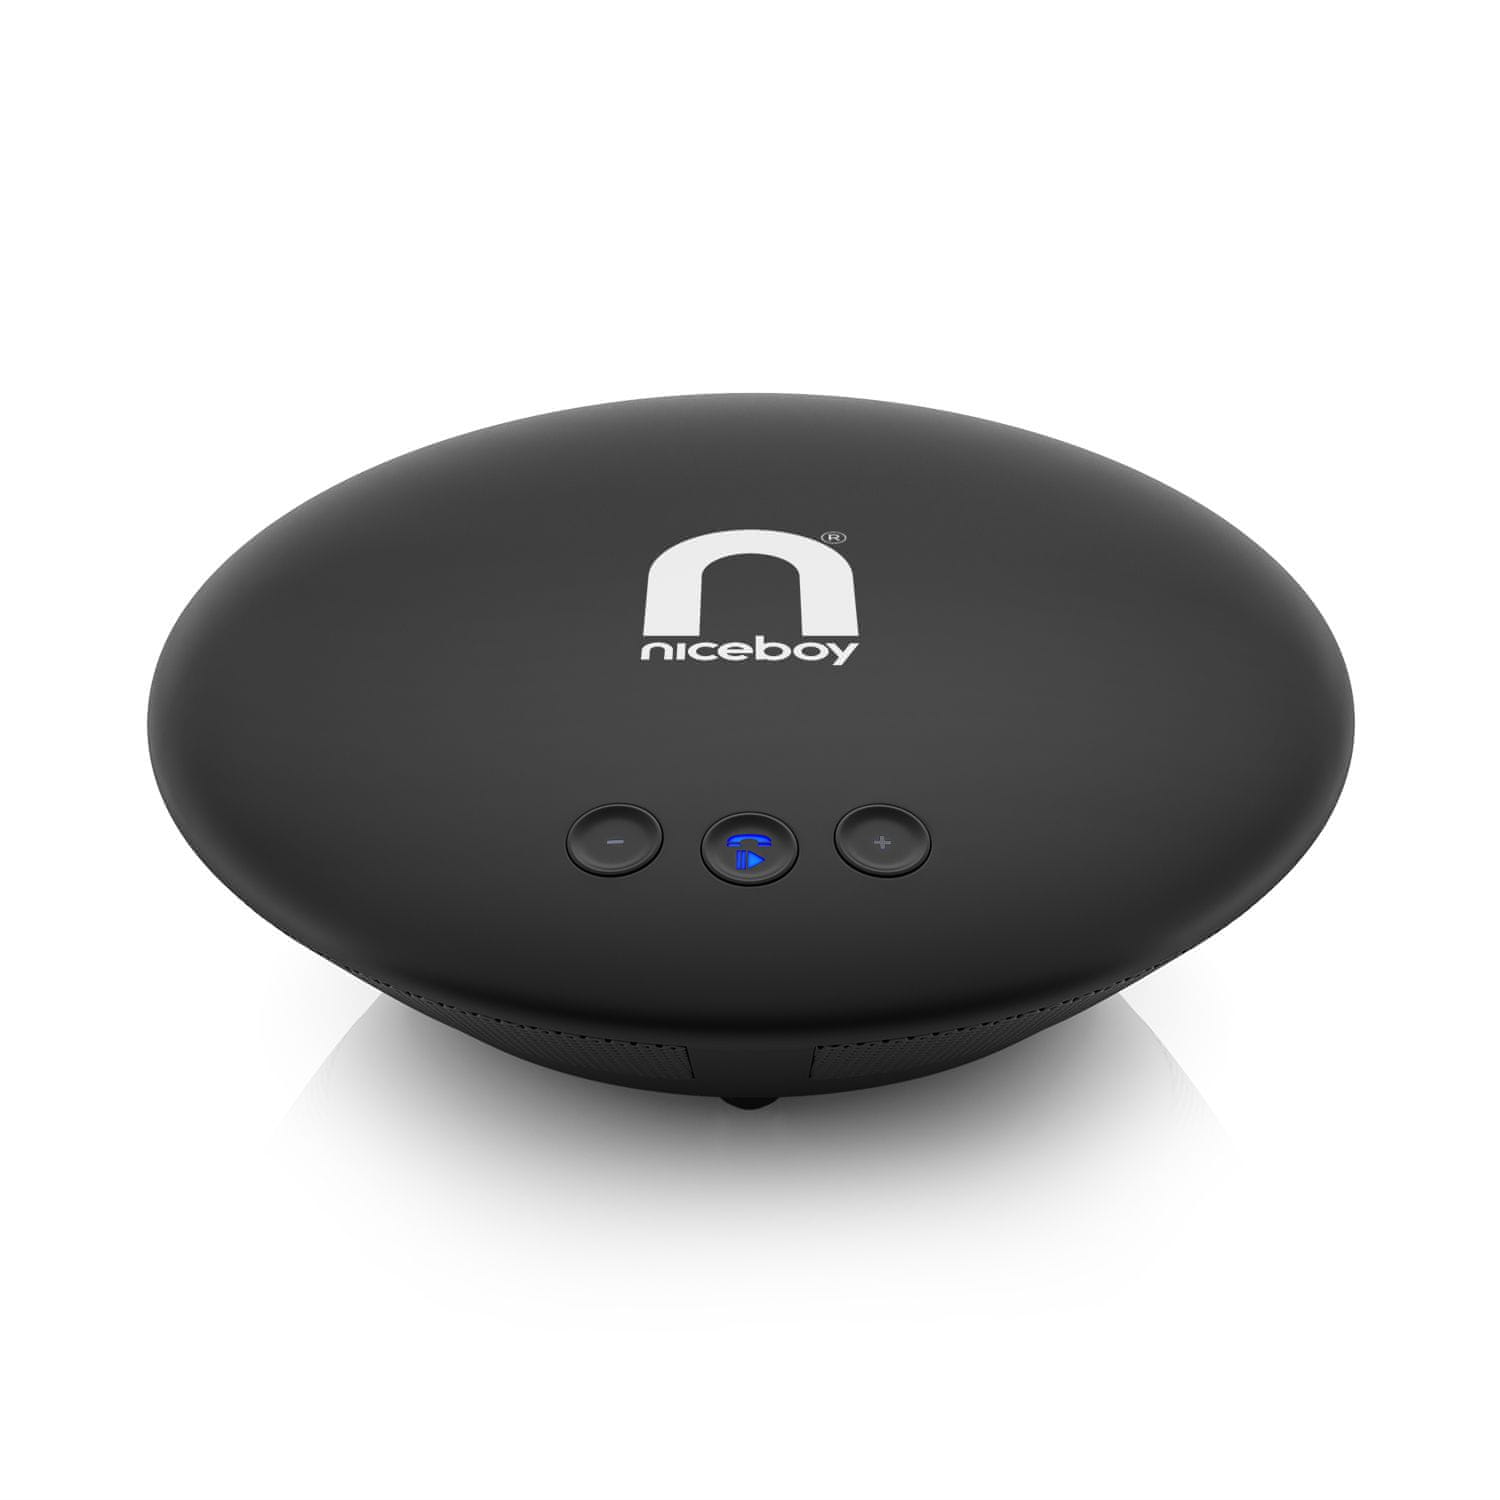  Bluetooth 5.0 konferencia mikrofon niceboy hanghívás bt hangfelvétel akár 5 m-es körzetben eszköz 2 az 1-ben hangszórók és mikrofon aux bemenet kiváló hang 5W teljesítmény-állóképesség akár 10 óra töltésig microUSB töltés modern dizájn